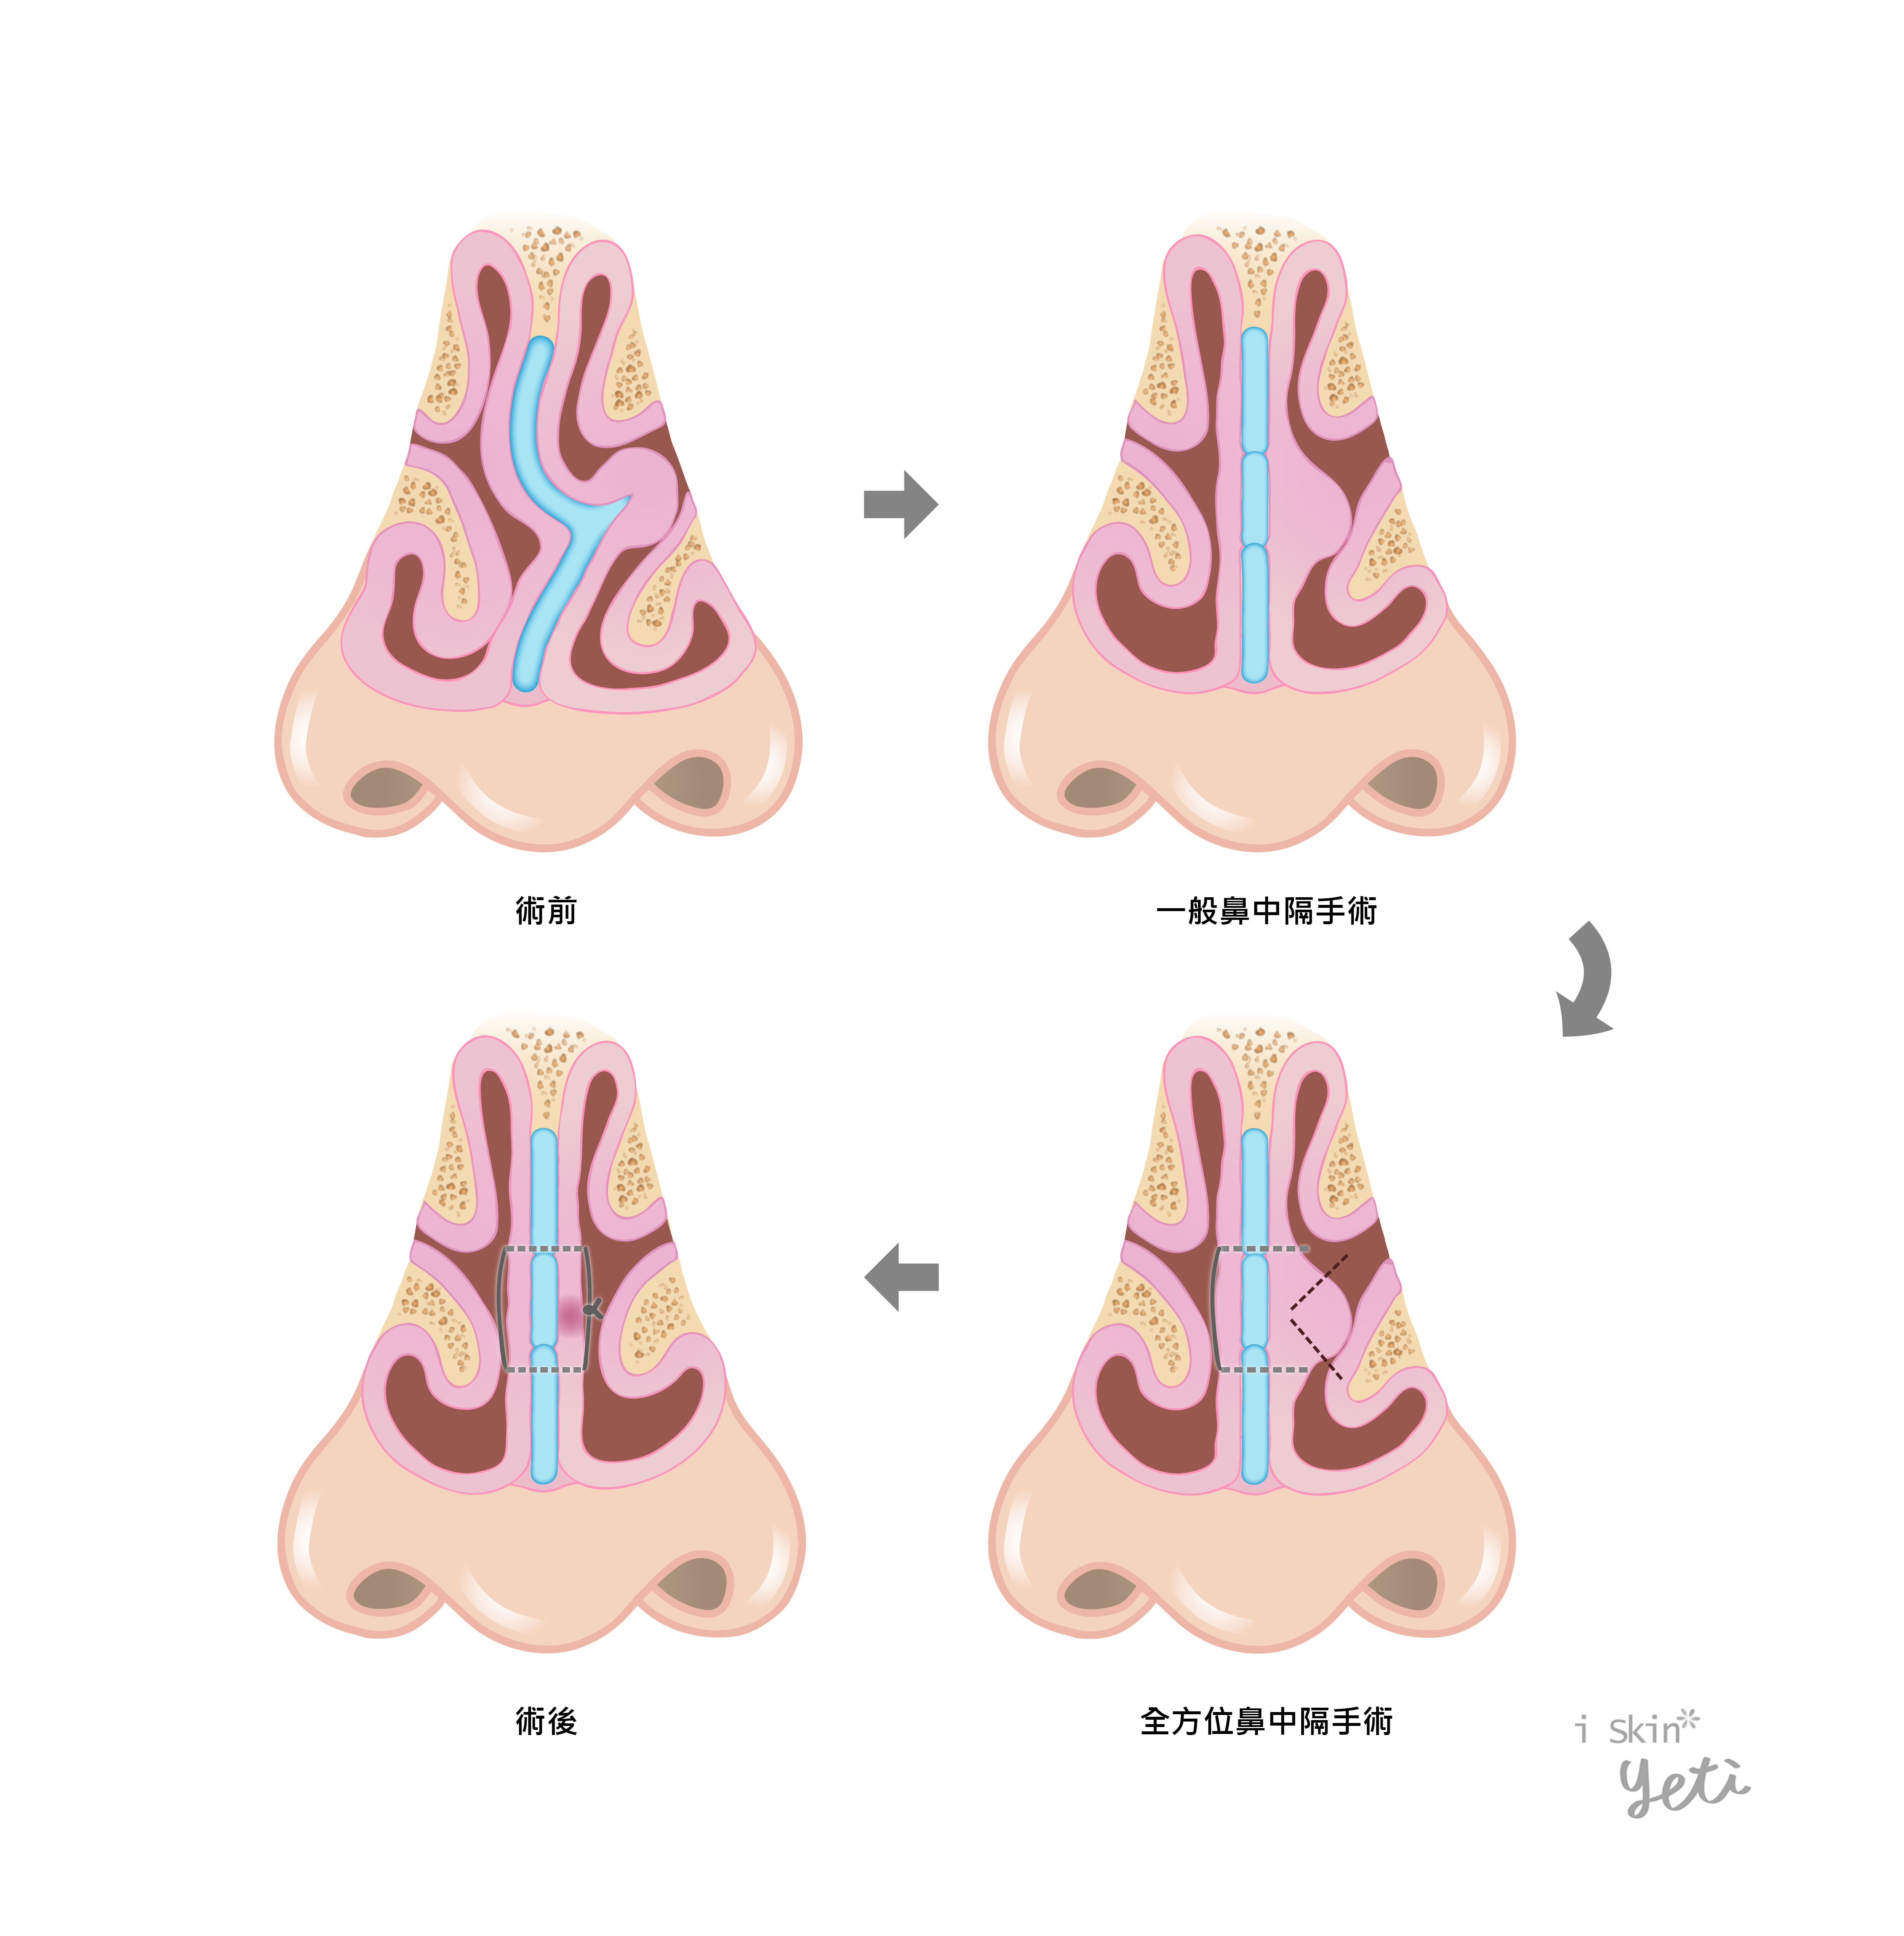 iSkin鼻中隔全方位矯正術除了進行骨架結構調整與縫合外，也會對於肥厚的黏膜作有效的切割塑形，比常規的鼻中隔黏膜下切除術有更好的手術效果。